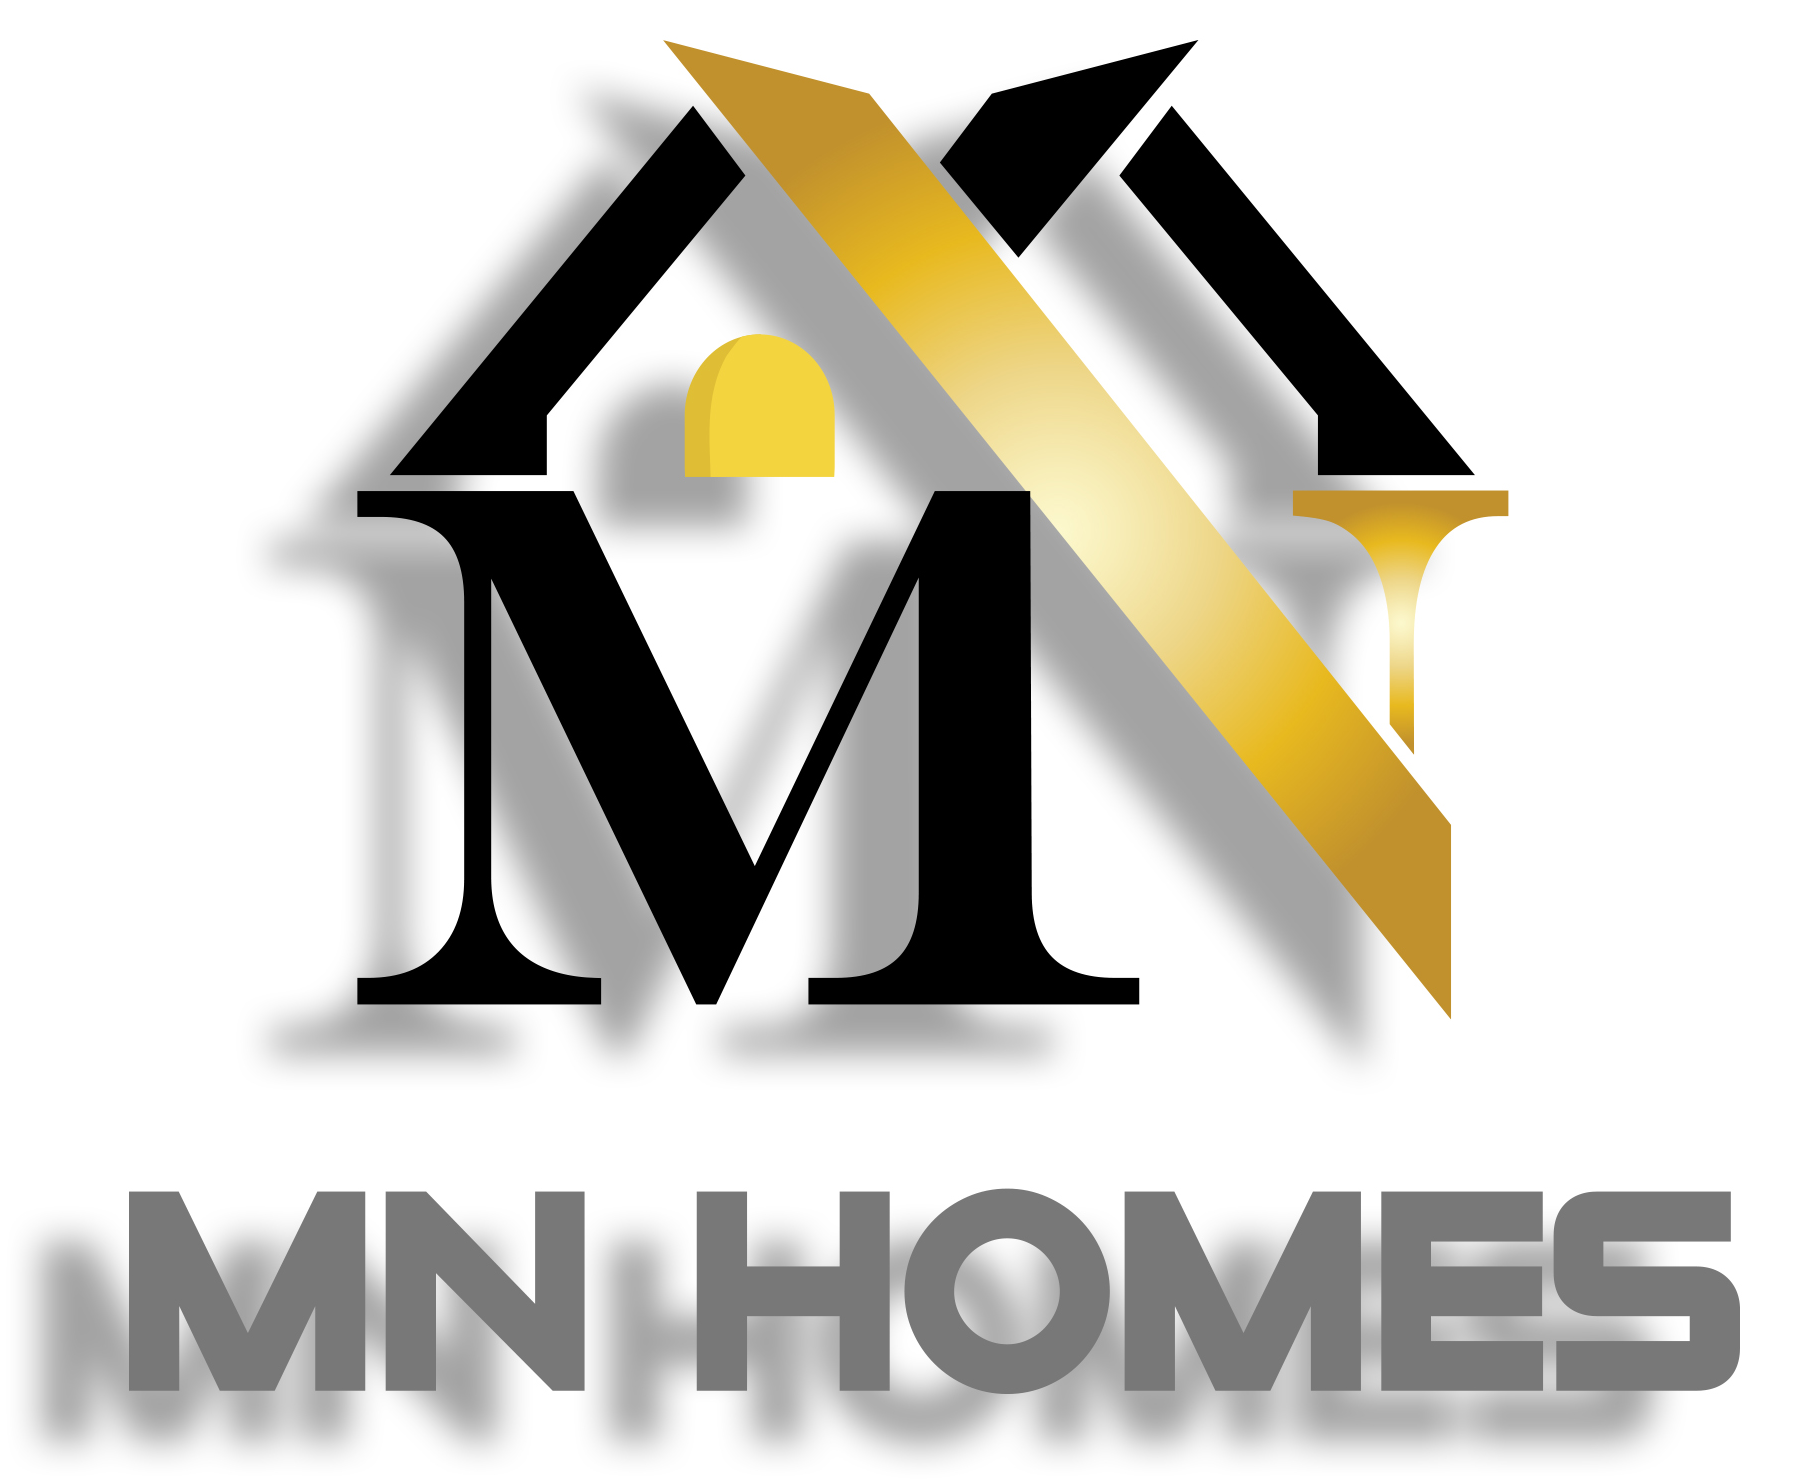 MN Homes's logo